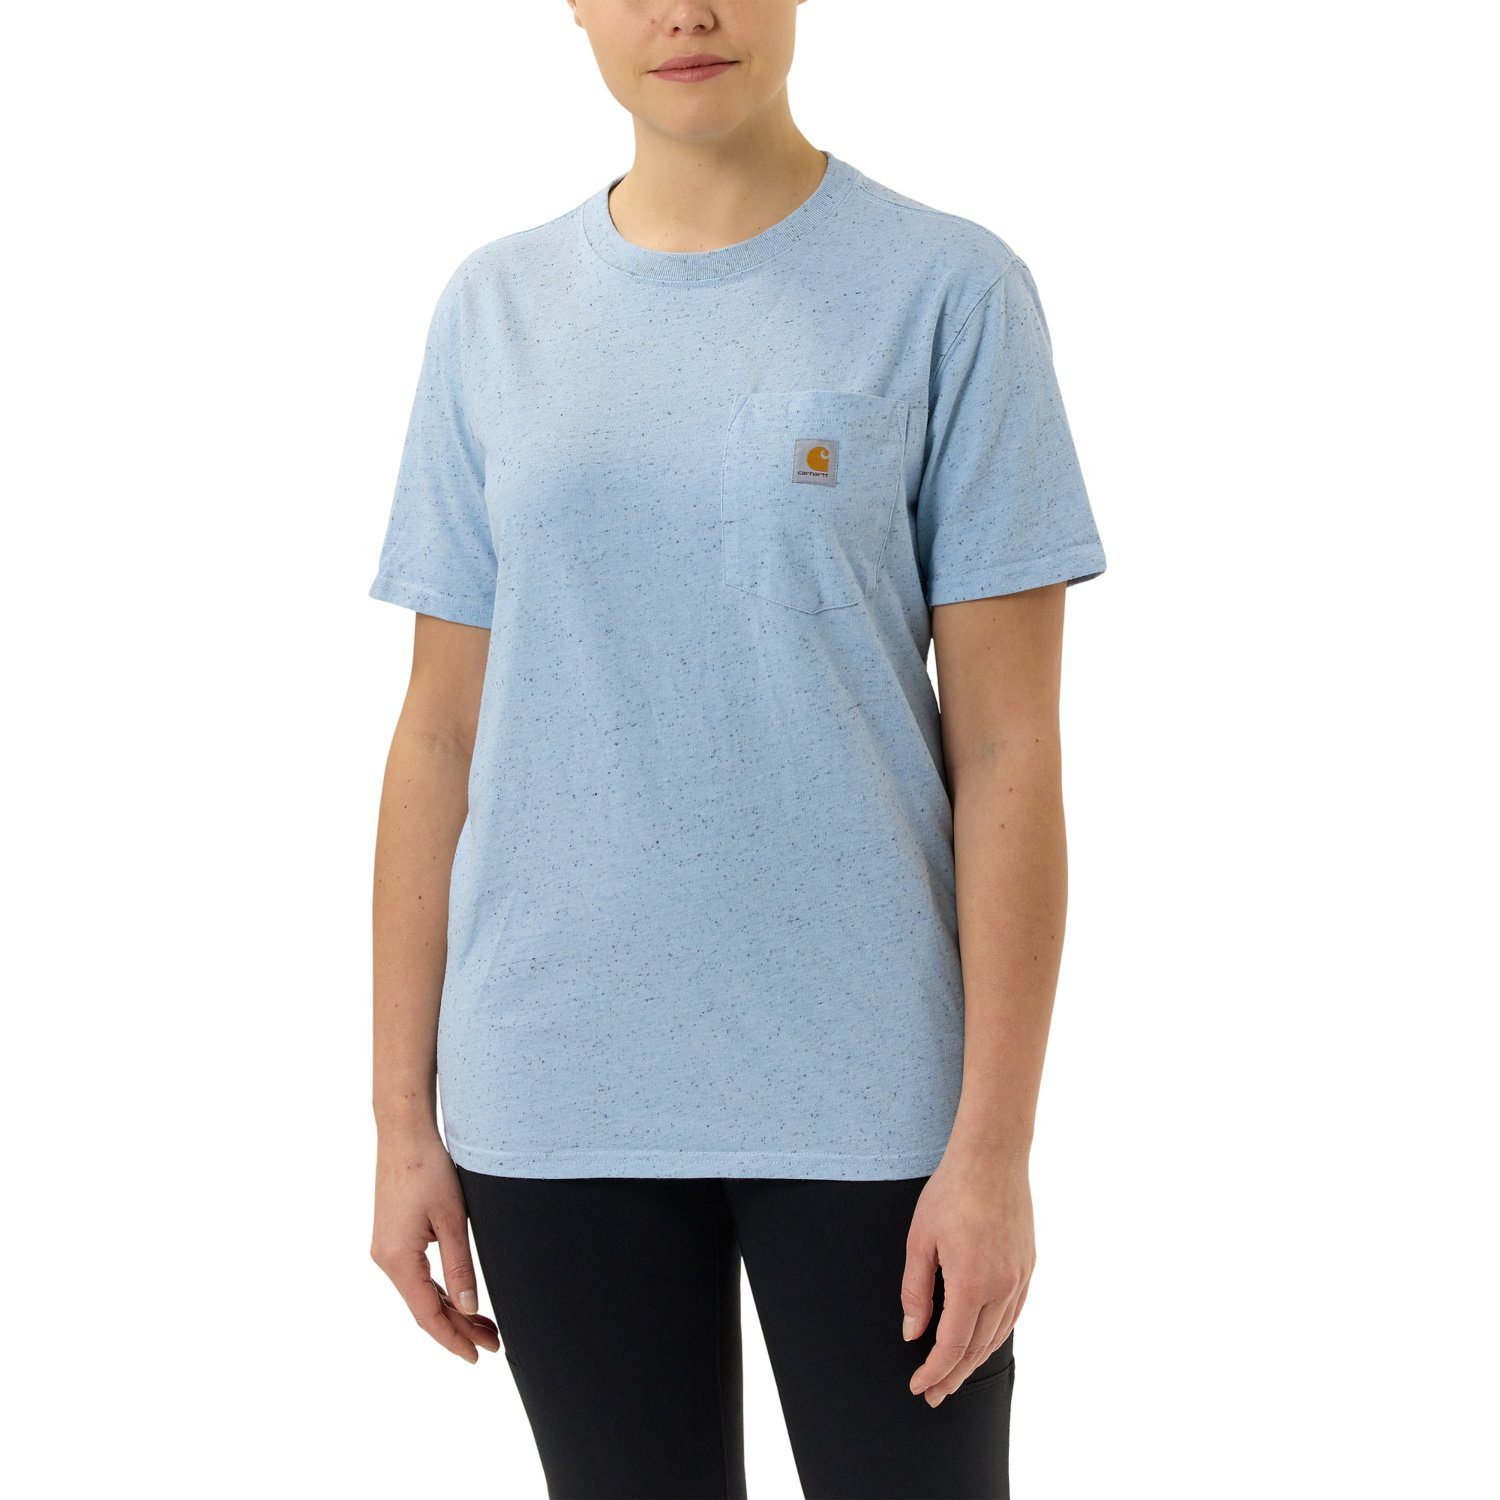 Adult Short-Sleeve T-Shirt blue Heavyweight Fit Carhartt Pocket nep Carhartt Loose T-Shirt powder Damen